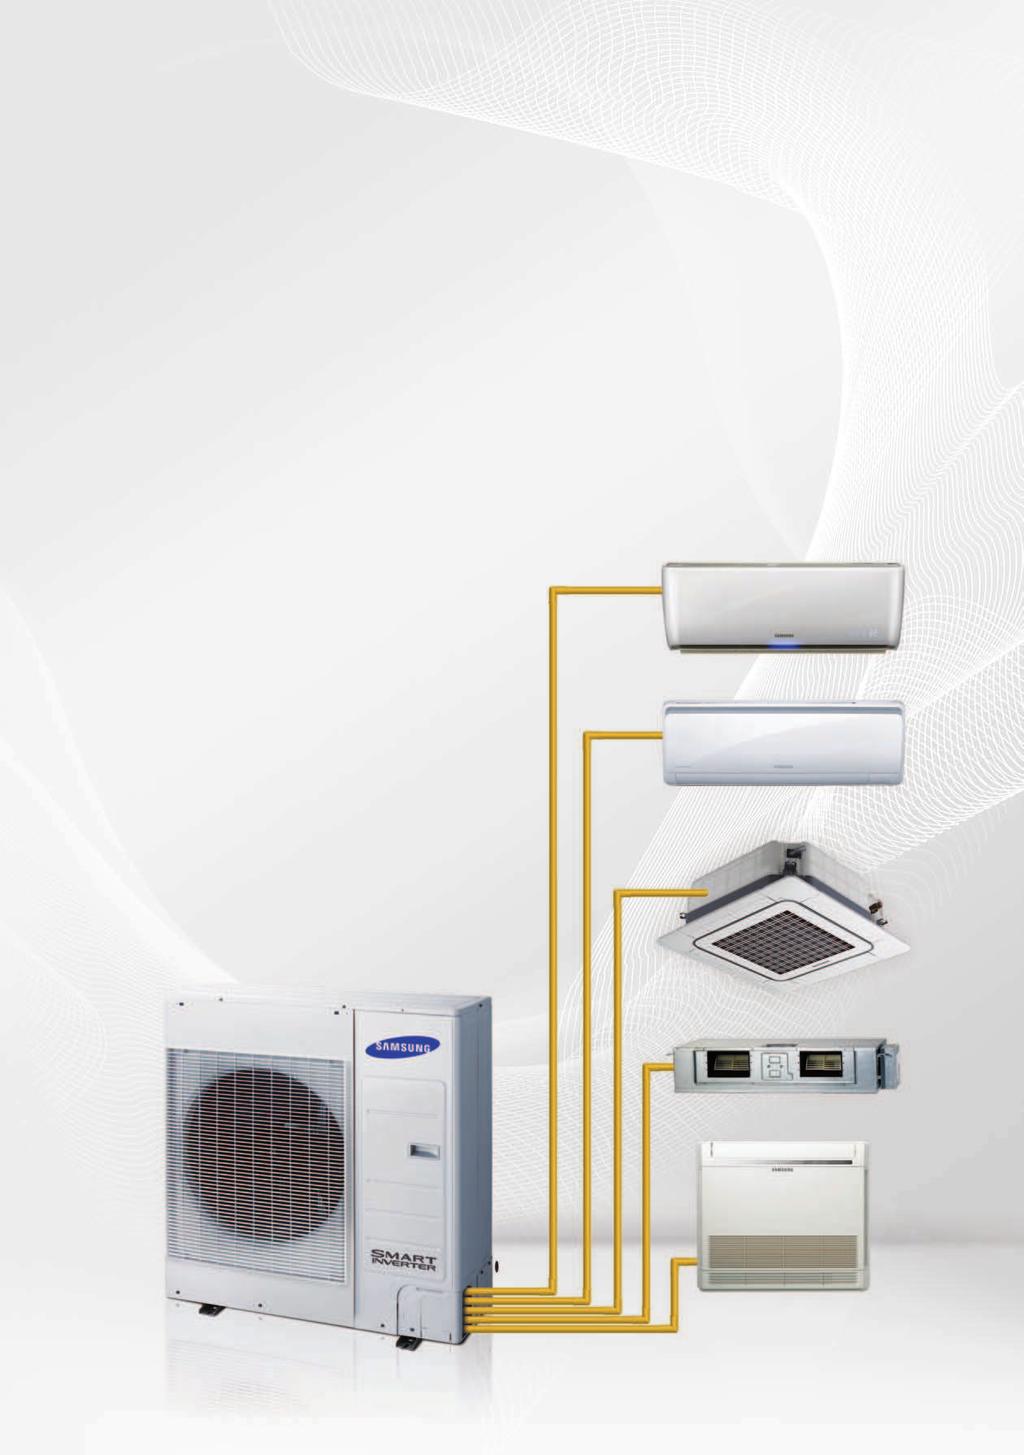 Systemy klimatyzacji SAMSUNG serii FJM to seria urządzeń typu multi inverter z możliwością podłączenia do 5 jednostek wewnętrznych dowolnego typu.